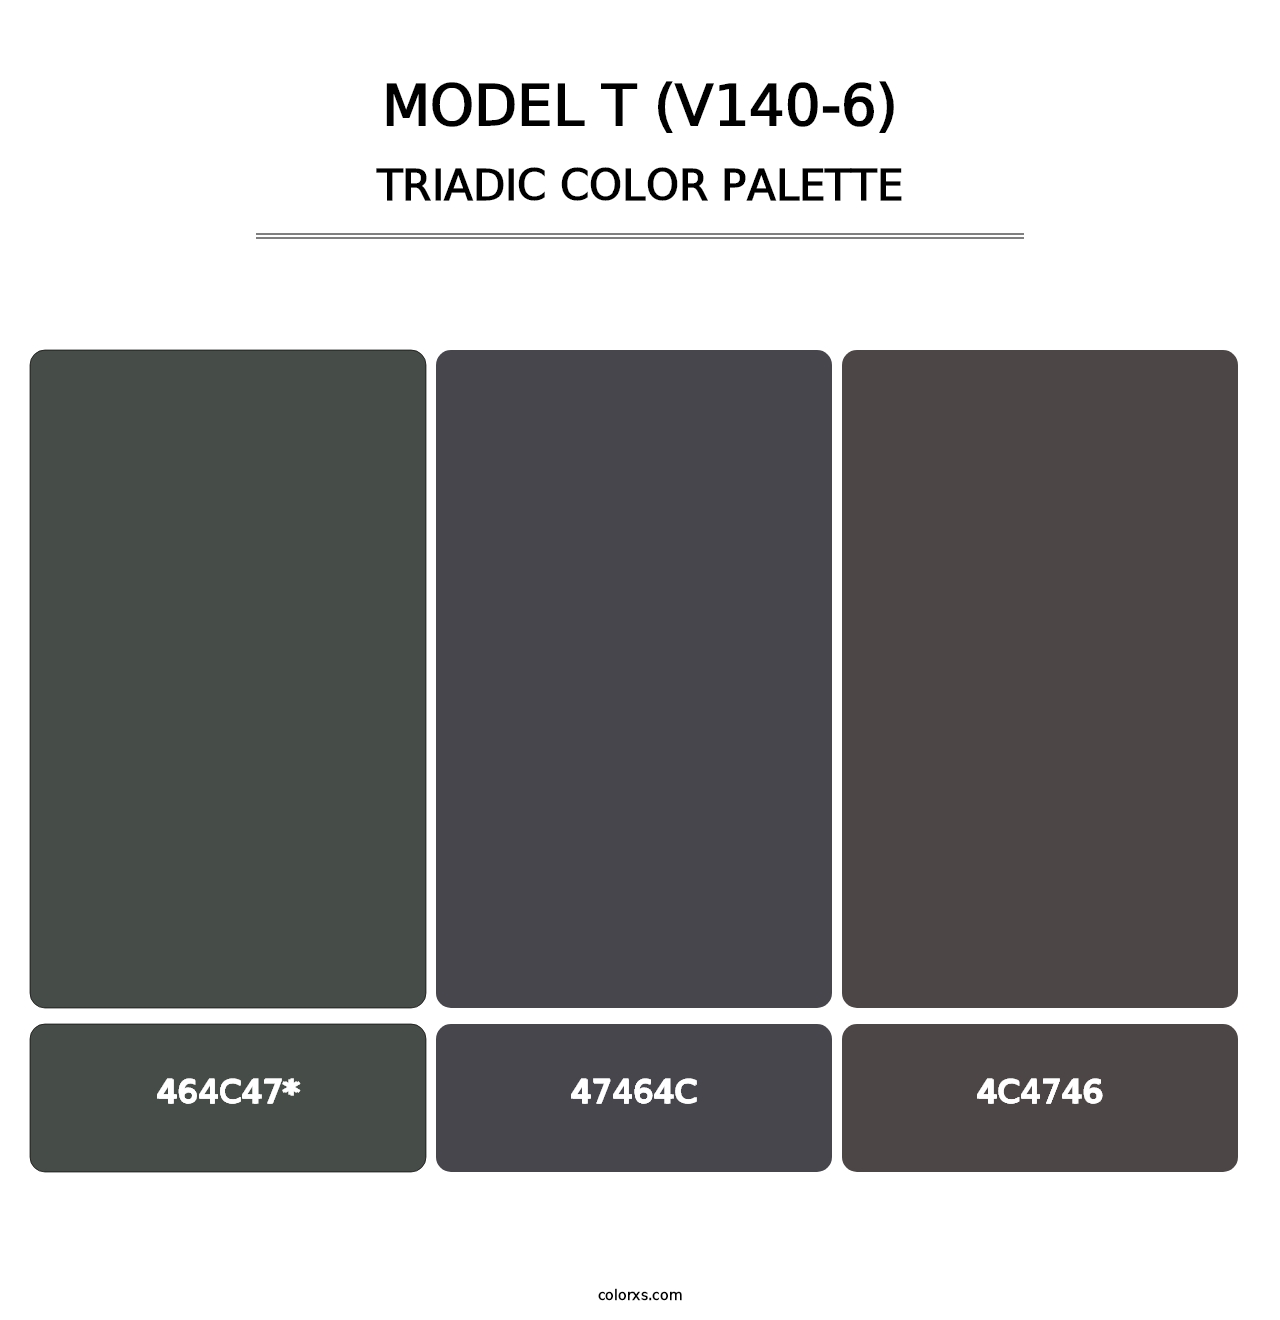 Model T (V140-6) - Triadic Color Palette